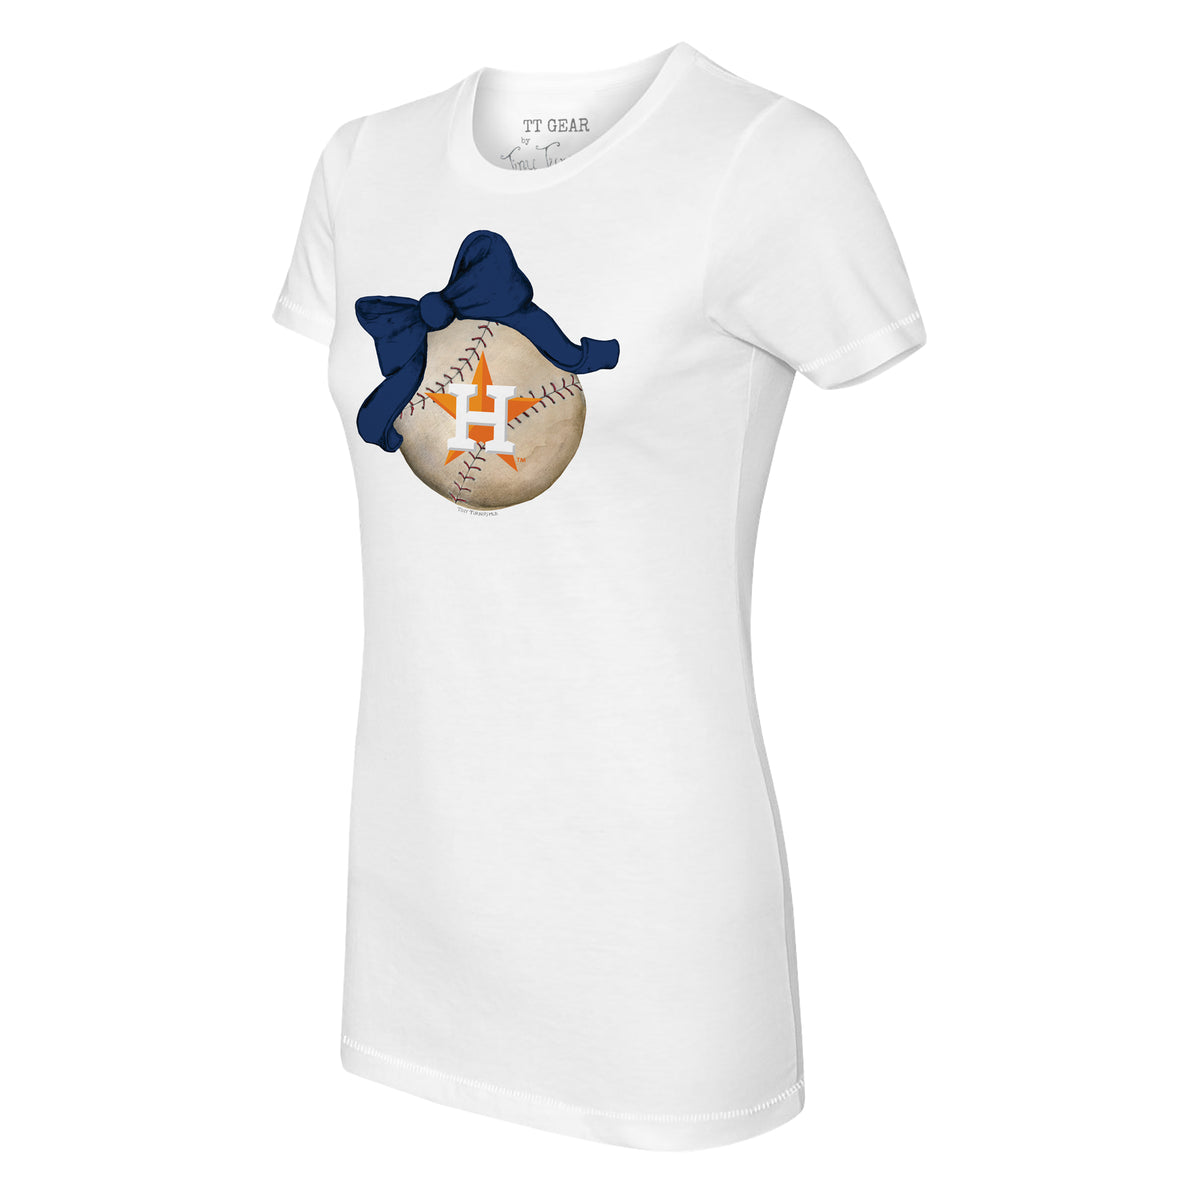 Toddler Tiny Turnip White/Navy Houston Astros Baseball Pow 3/4-Sleeve Raglan T-Shirt Size: 2T